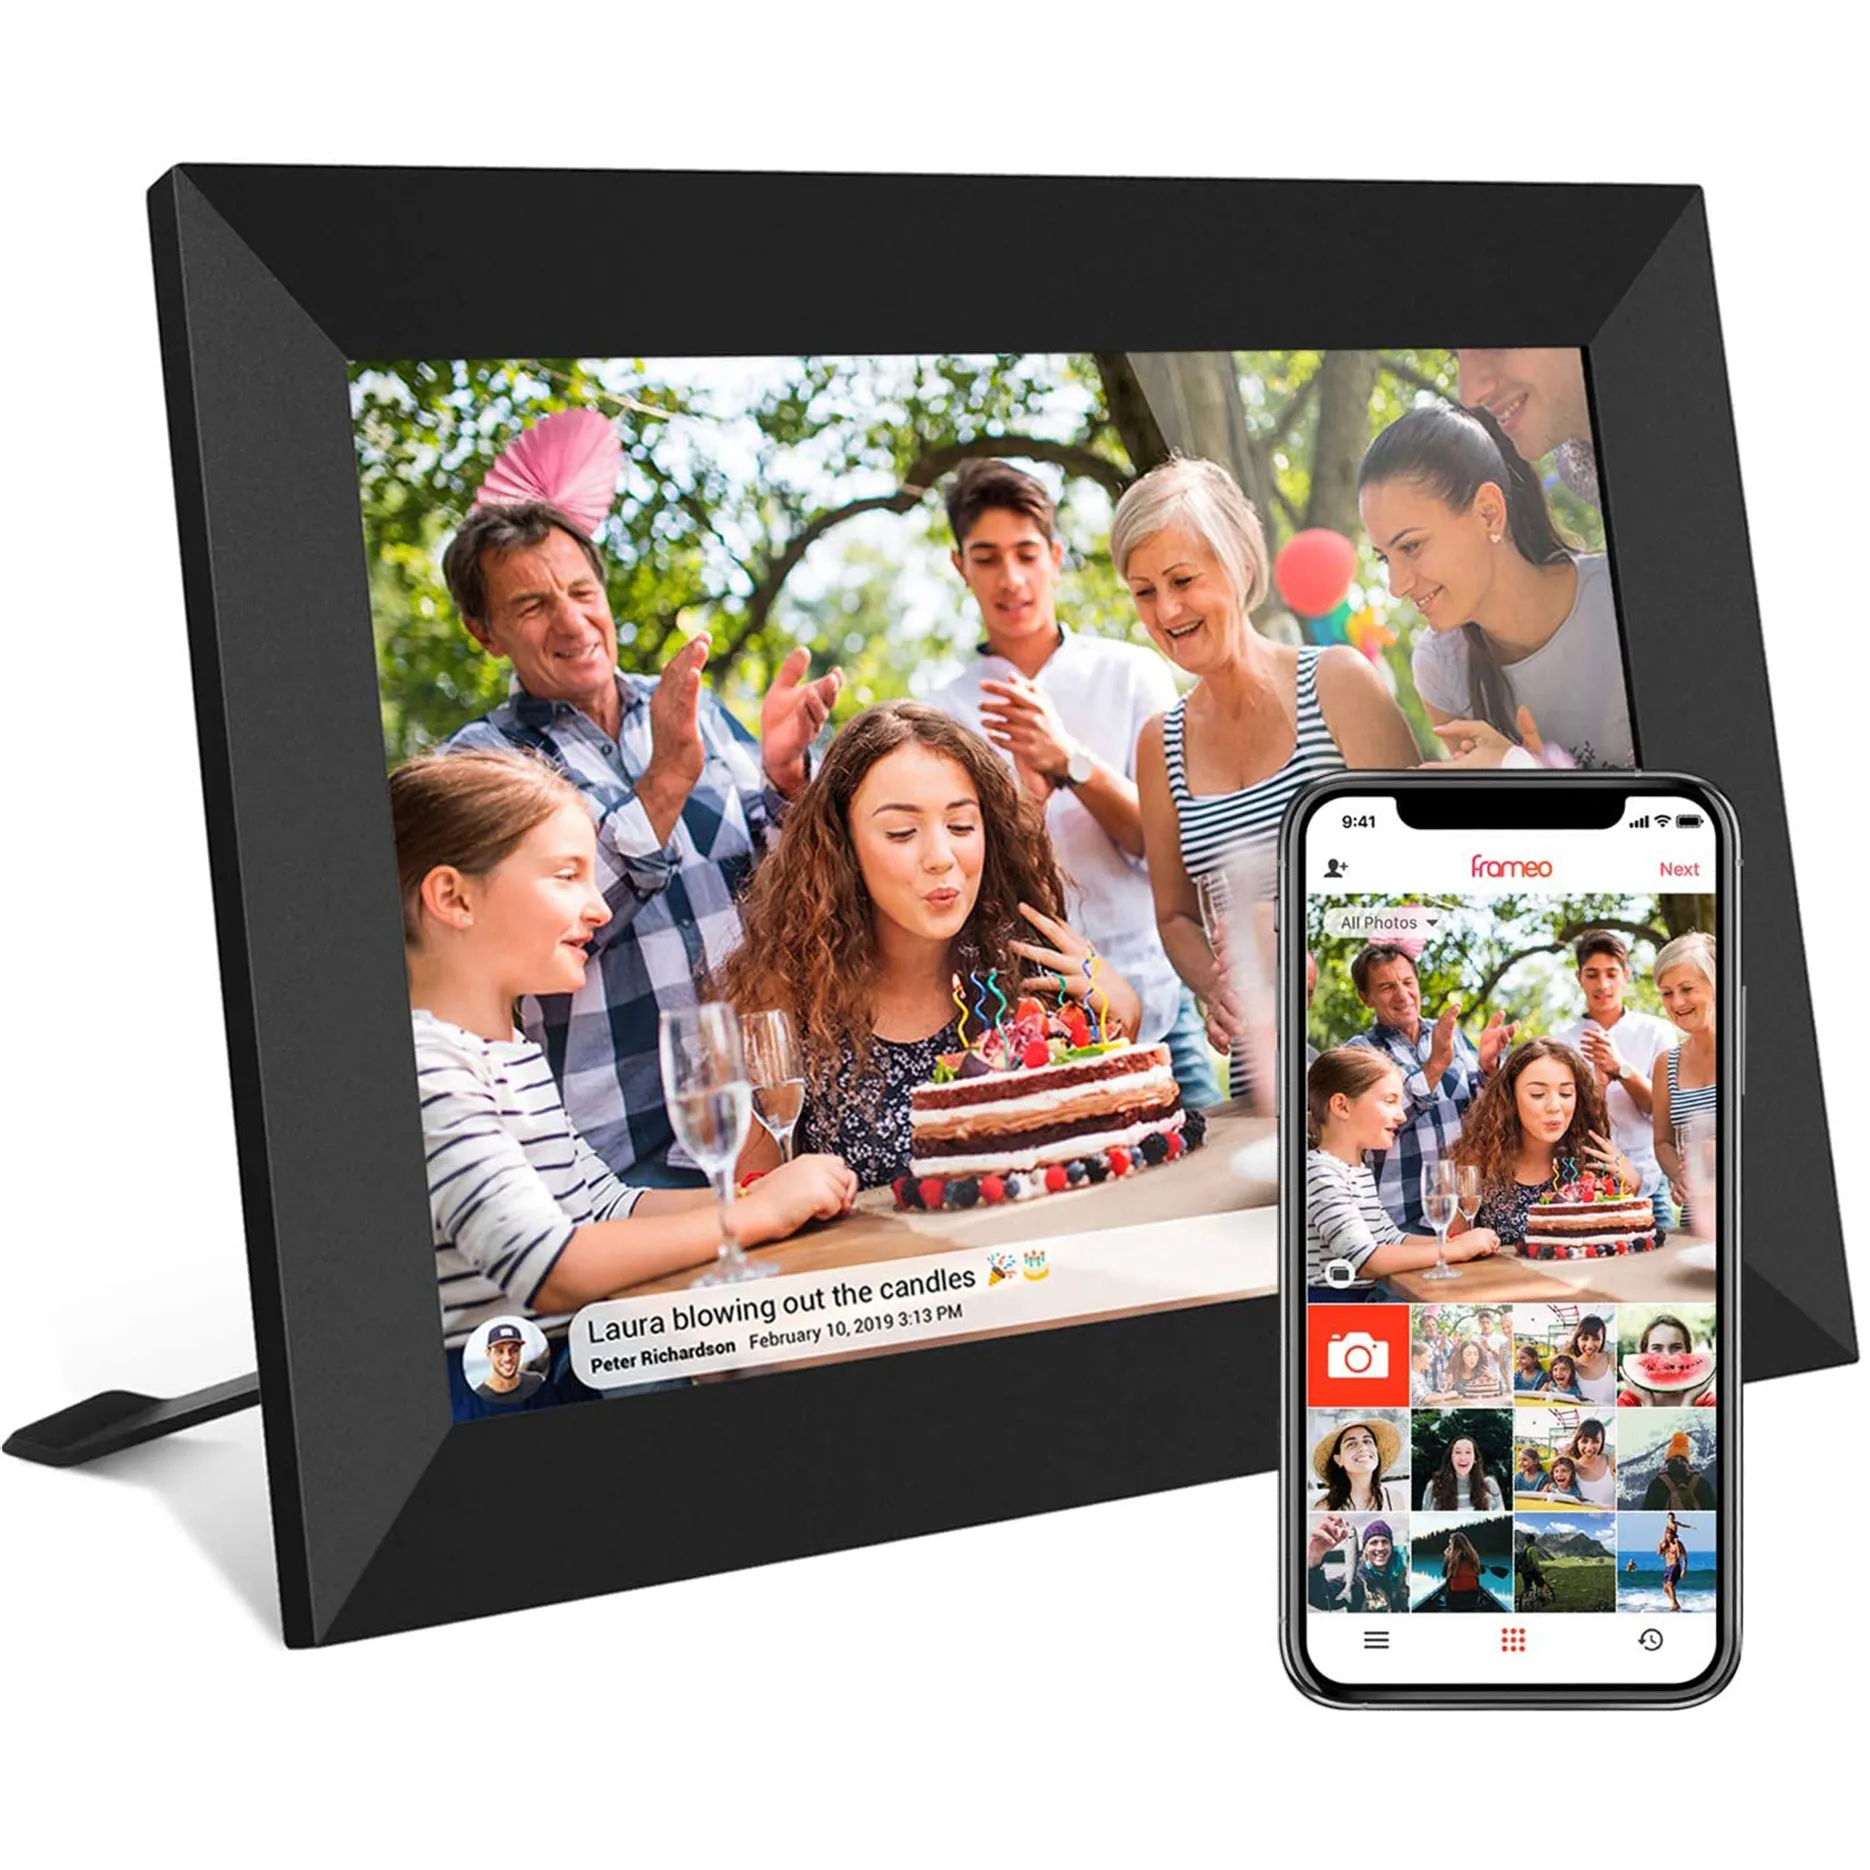 Álbumes DE FOTOS electrónicos Ips con pantalla táctil de imagen inteligente de 10,1 pulgadas con almacenamiento de 16Gb para compartir fotos y vídeos a través de la aplicación Wifi marco Digital